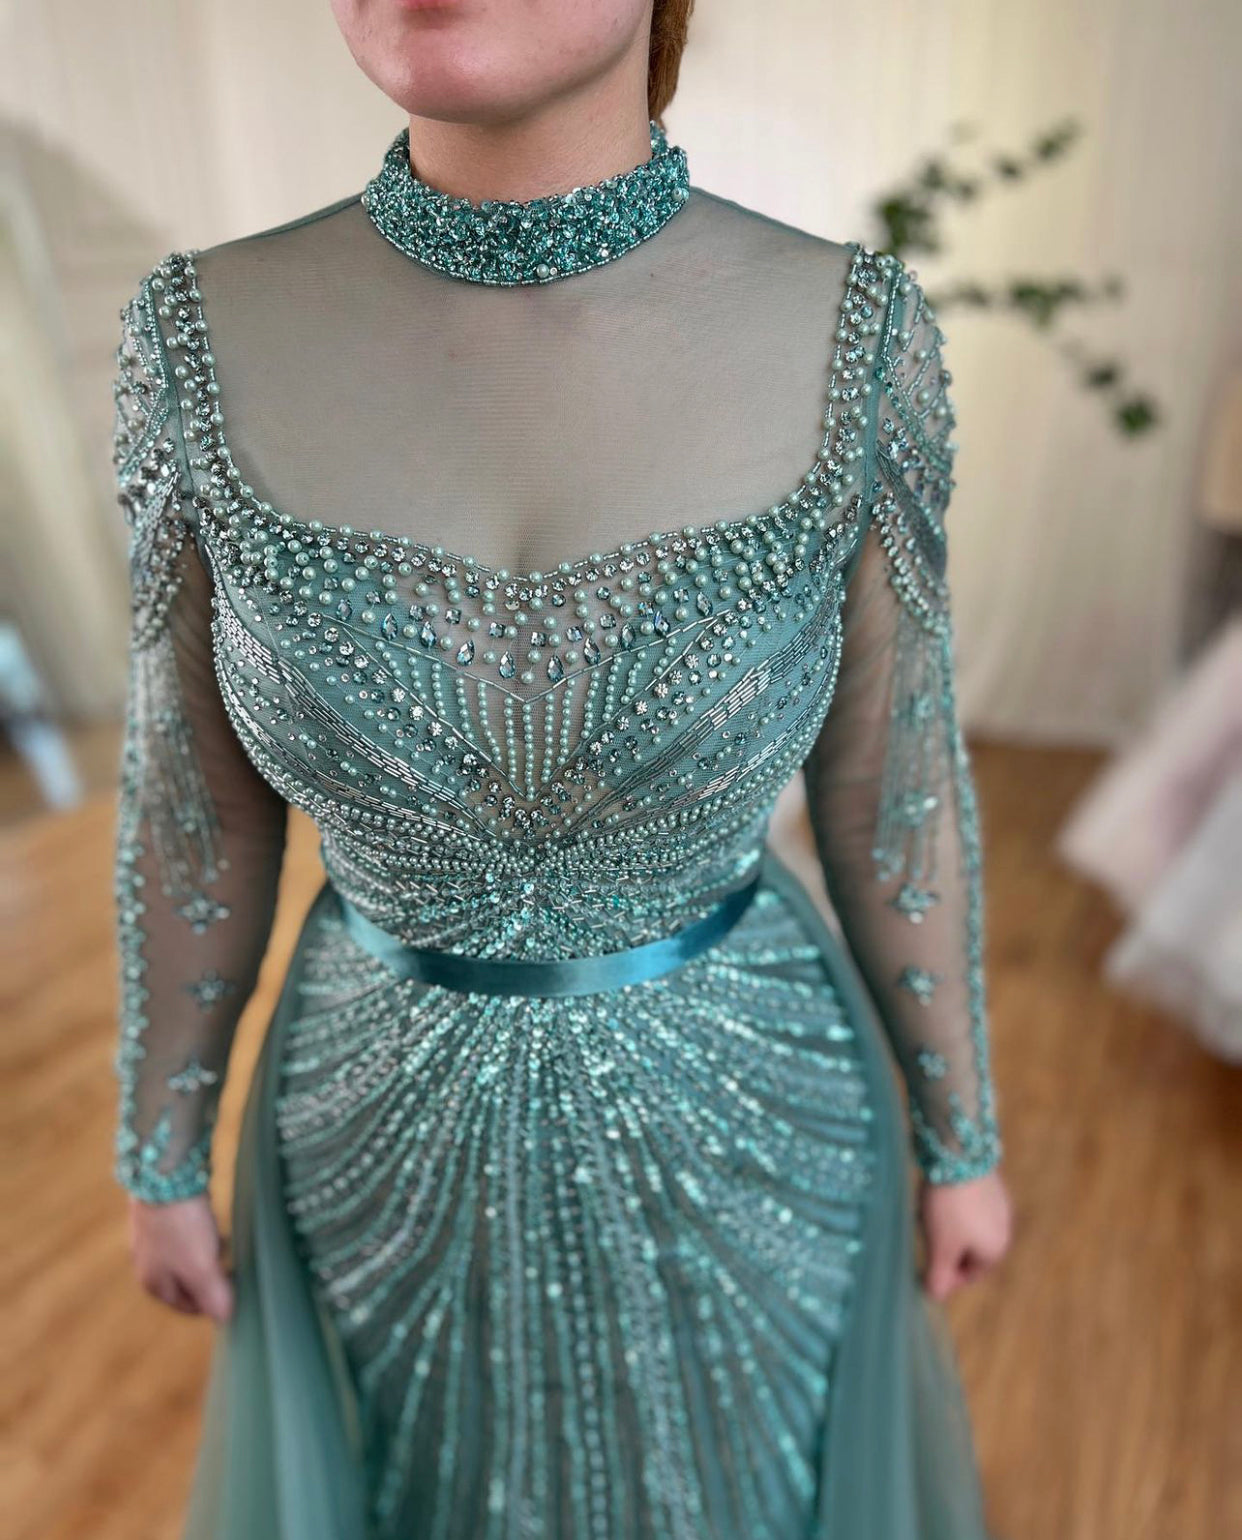 Jessi Elegant Long Sleeves Evening Dress Mscooco.co.uk